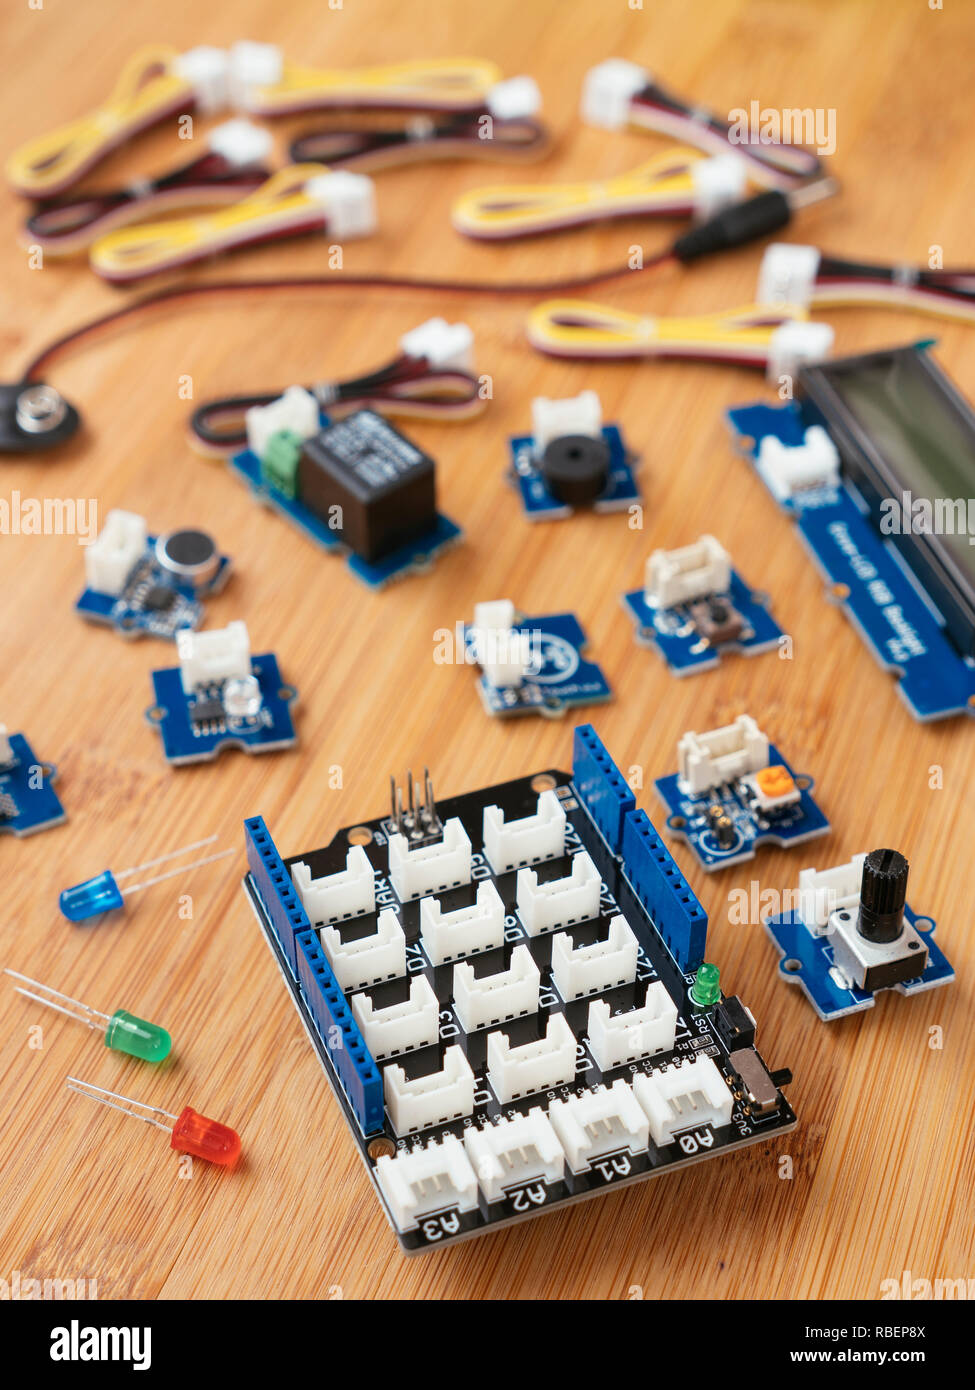 Grove Modul Starter Kit für Arduino mit einer Auswahl verschiedener Module und ein Schild. Stockfoto